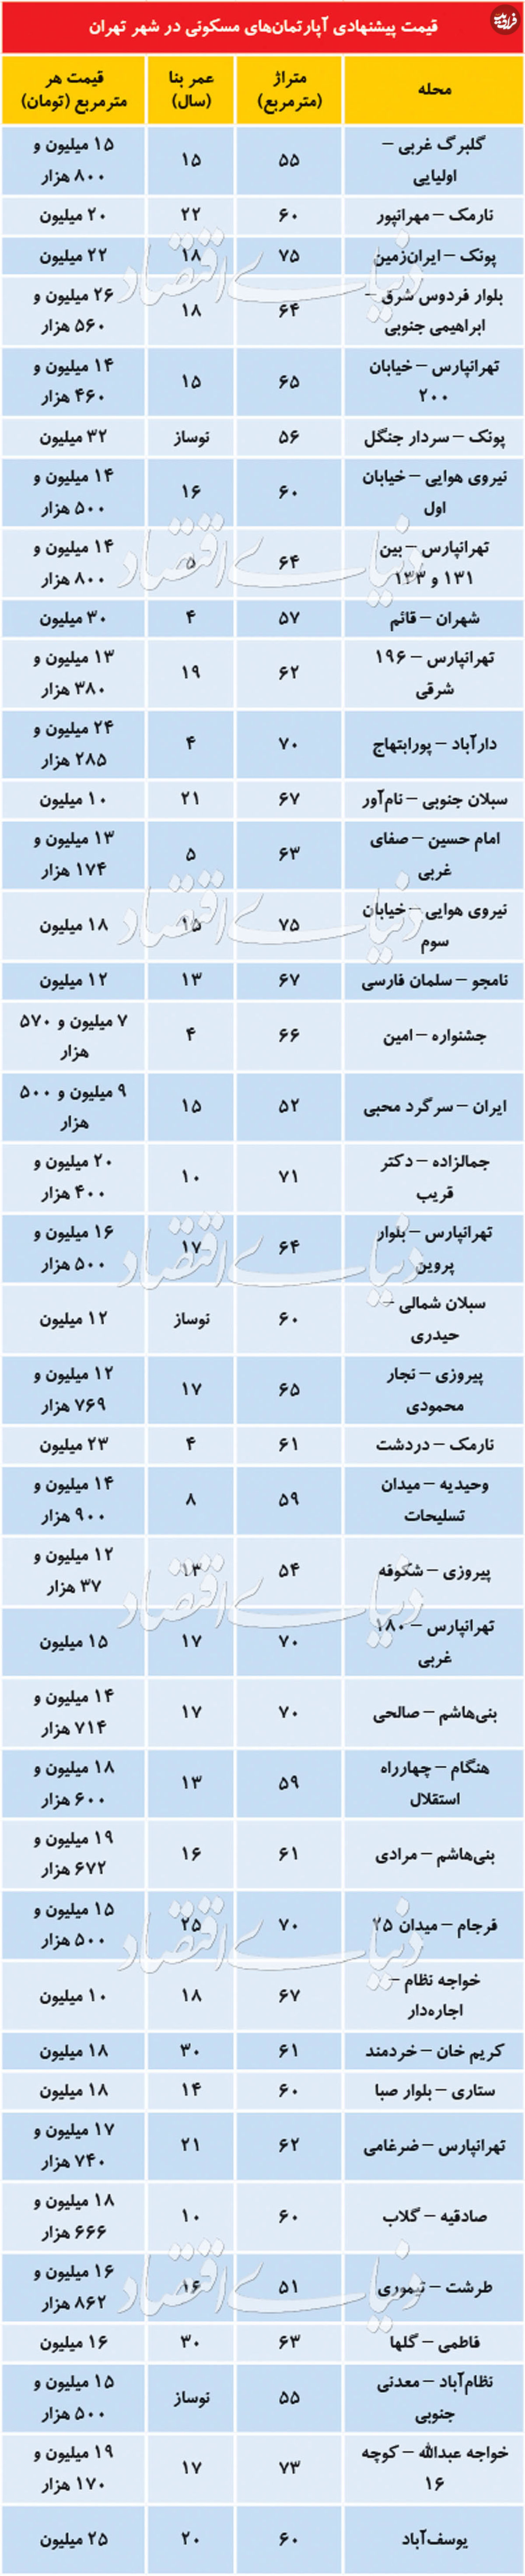 قیمت آپارتمان در مناطق مختلف تهران